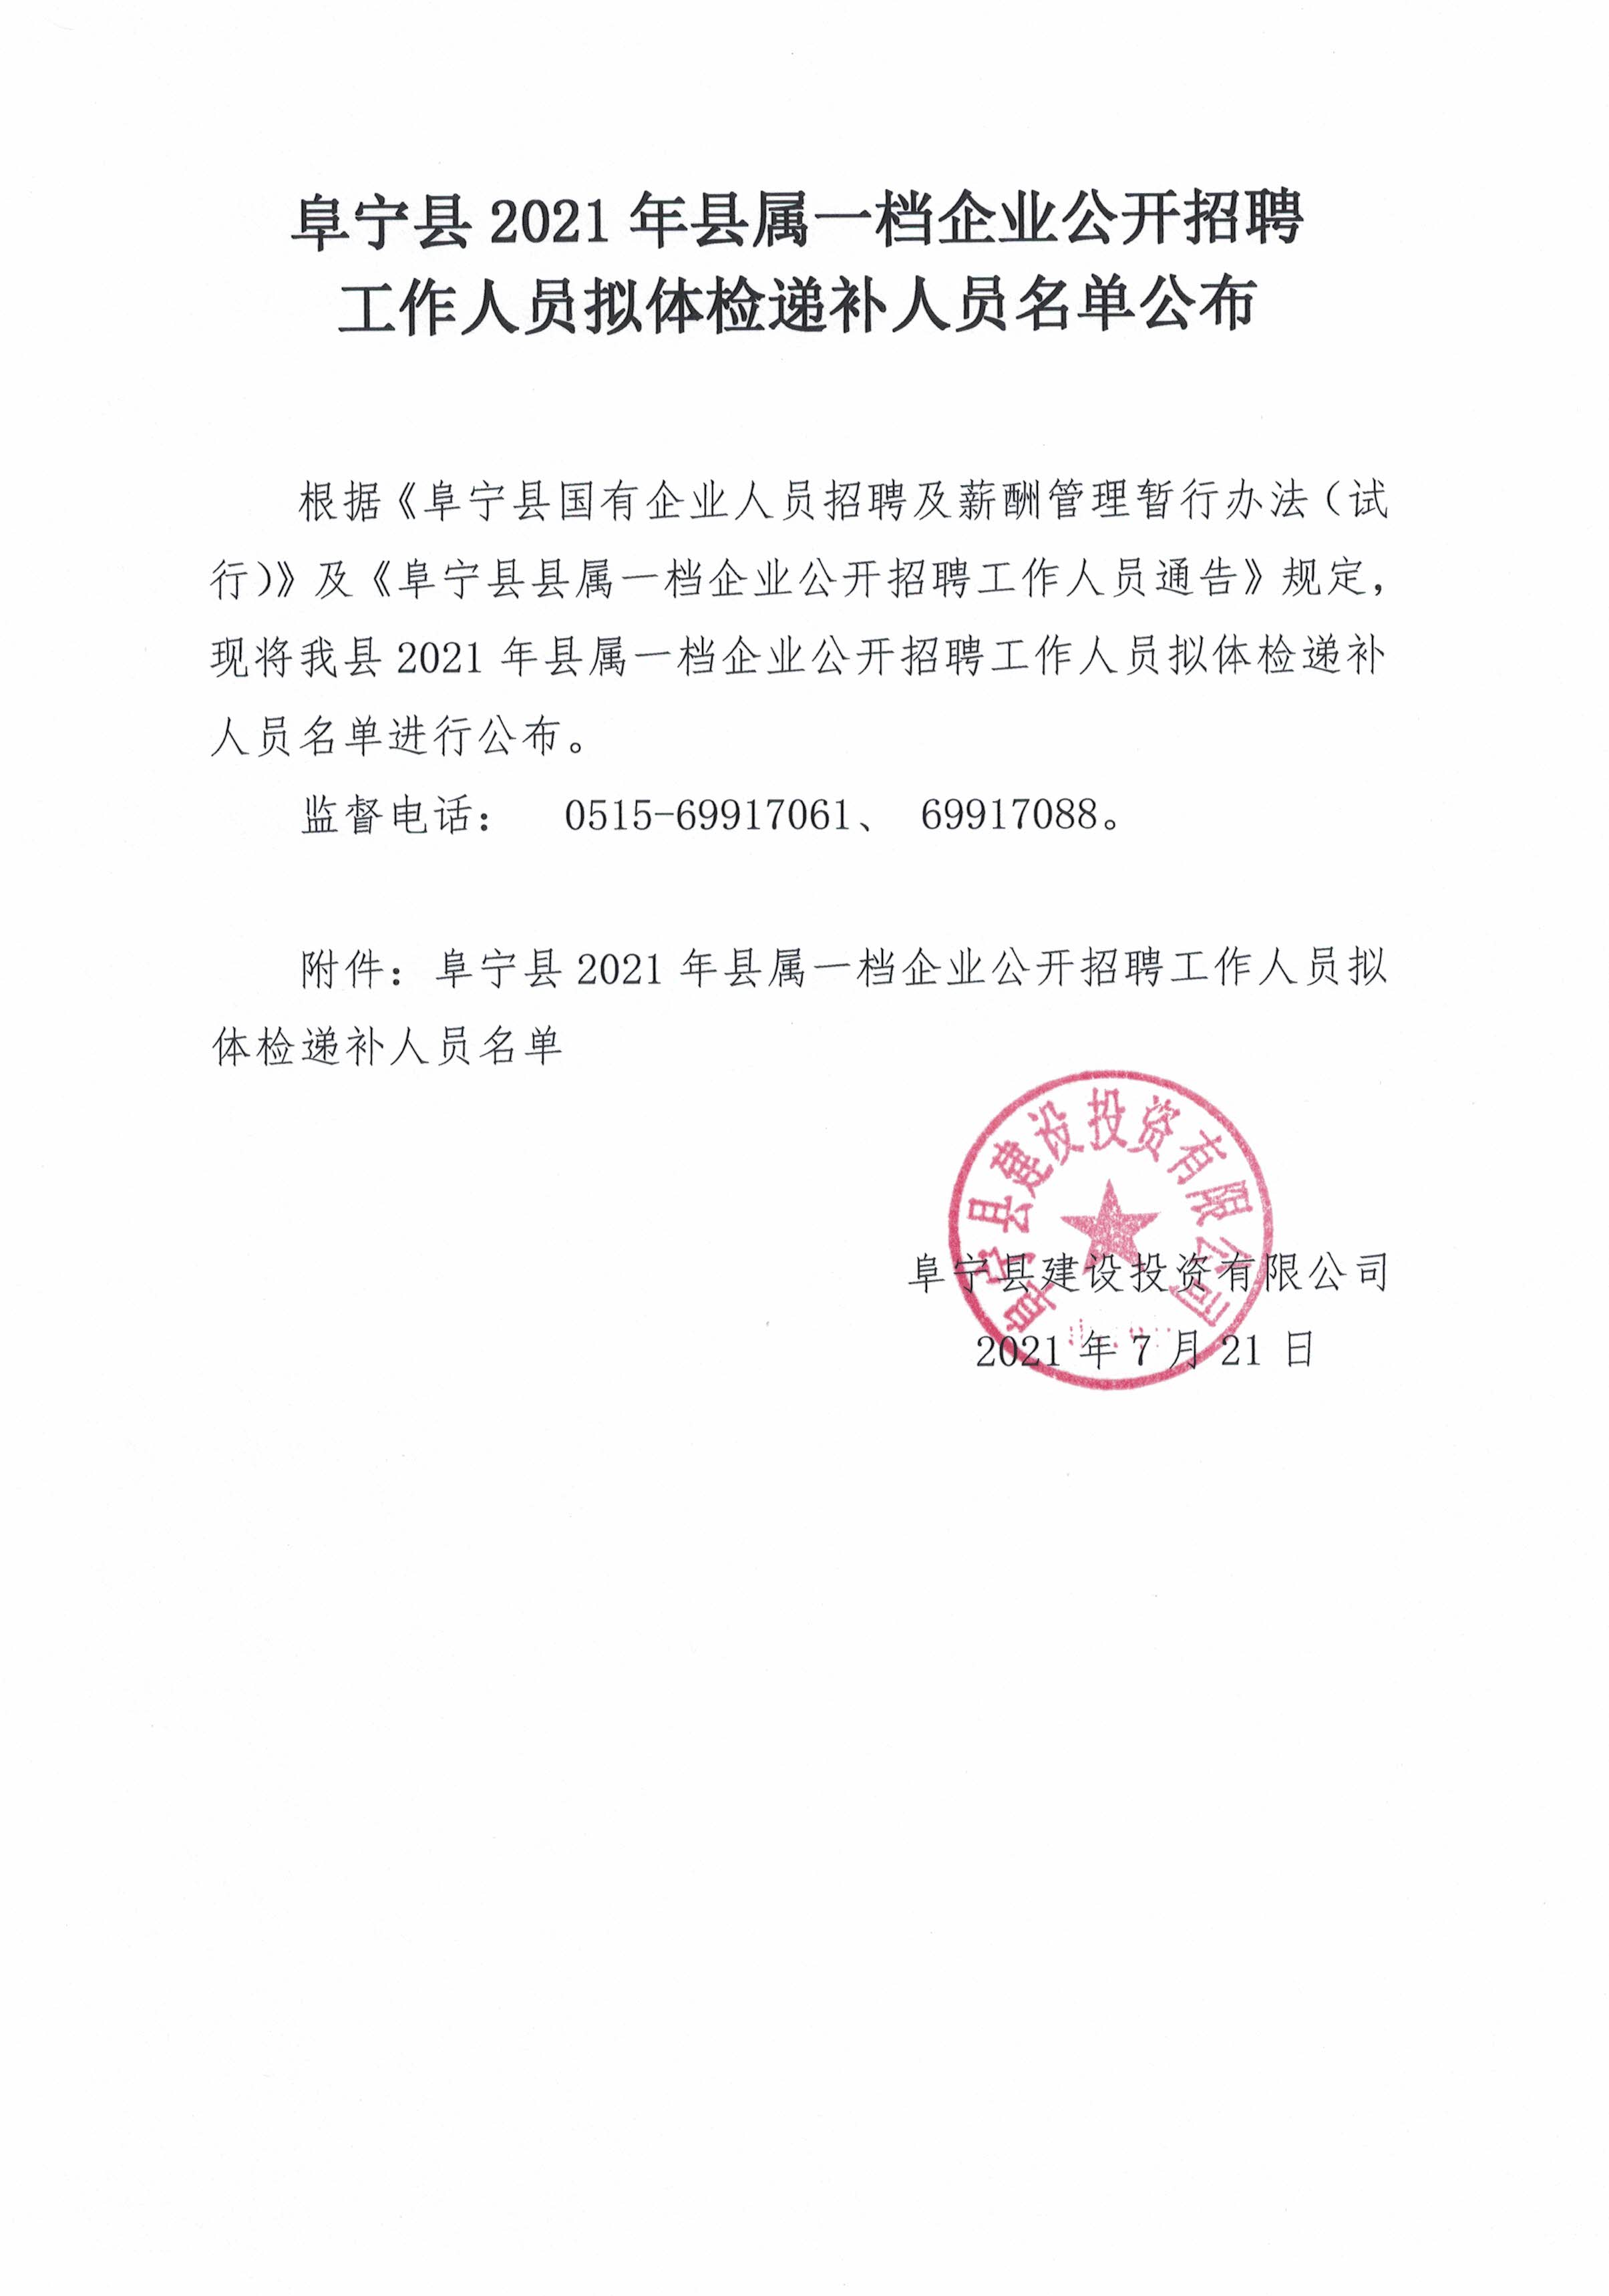 阜宁县人民政府 通知公告 阜宁县2021年部分事业单位公开招聘人员资格复审递补名单（二）公布